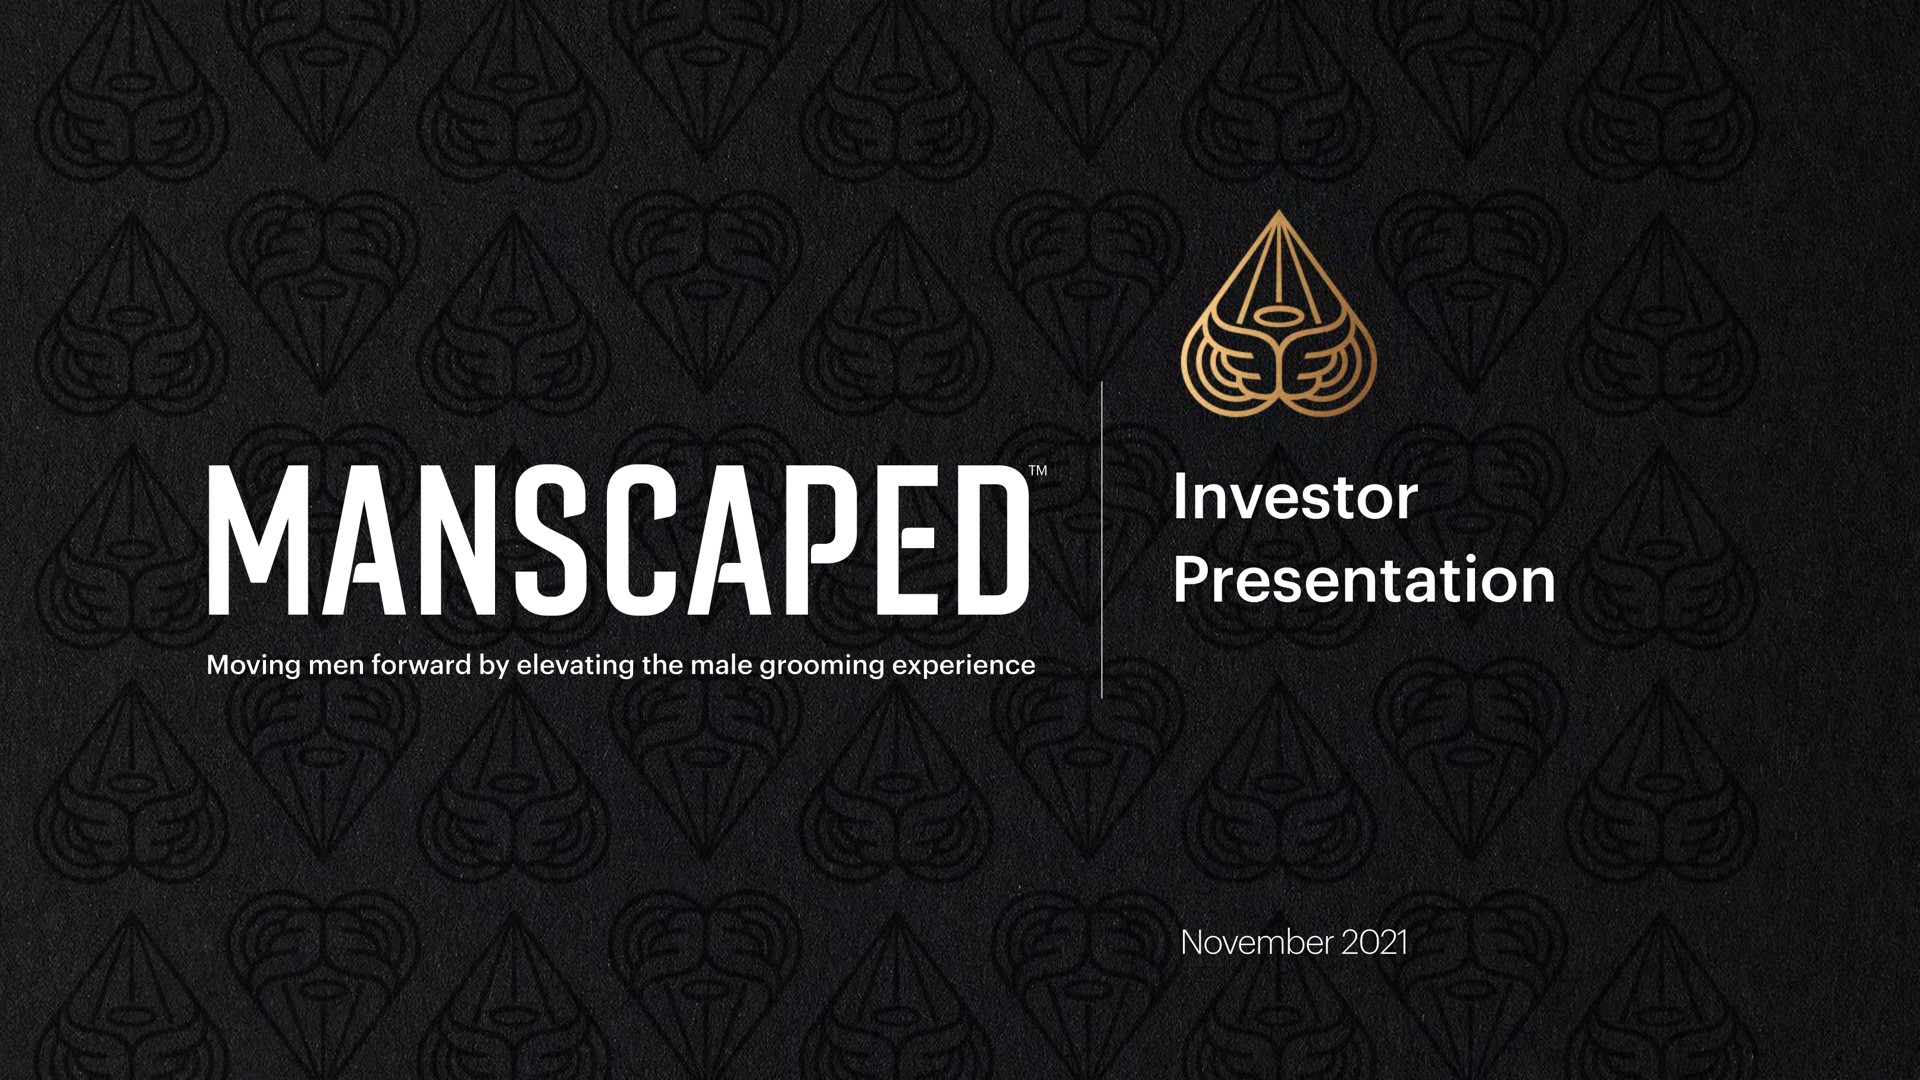 investor presentation ups eer | Manscaped